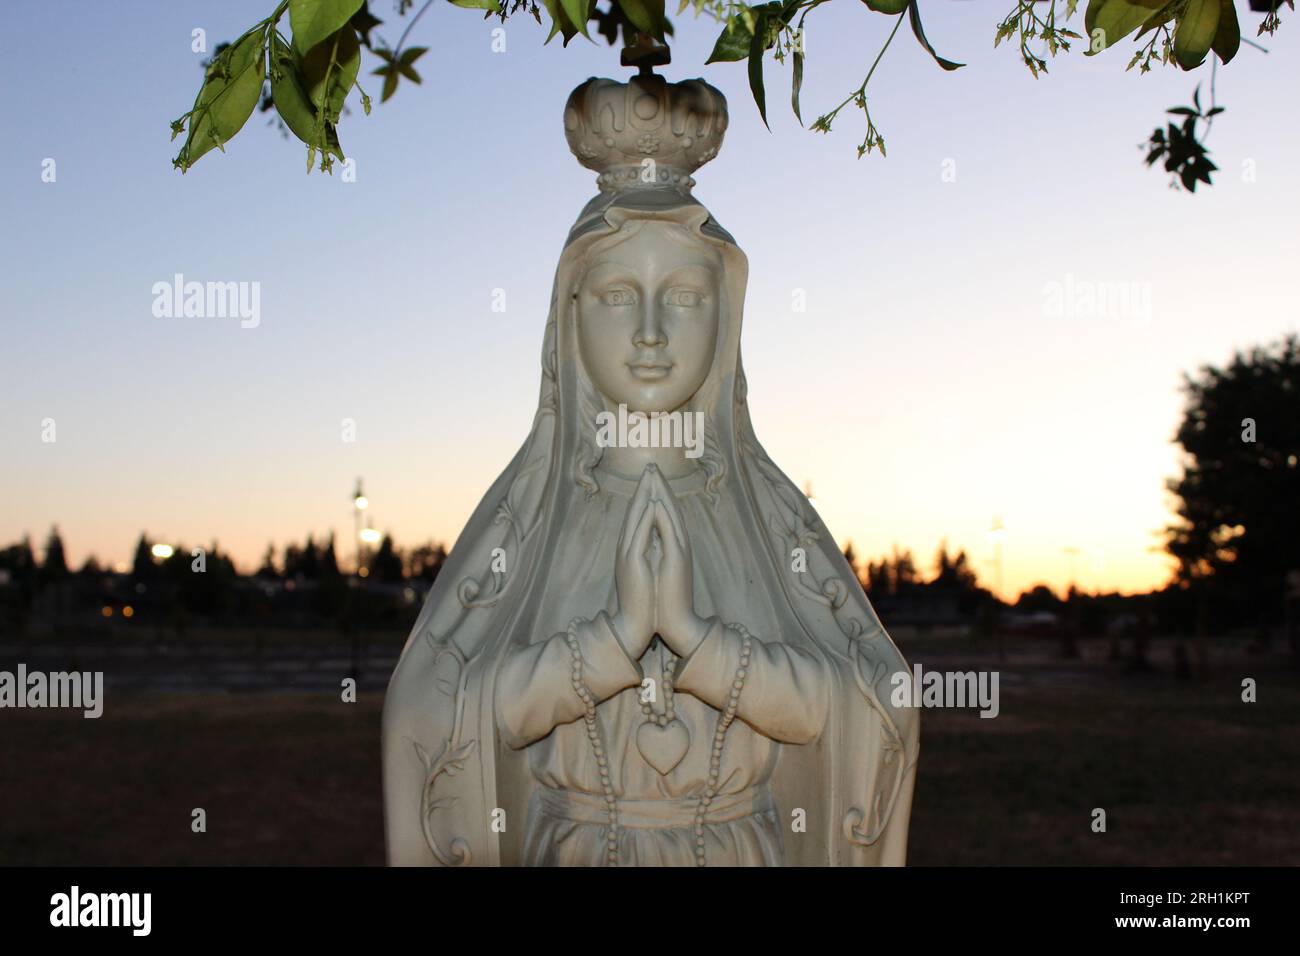 "Divina Serenità - Un'accattivante statua in marmo di una donna in preghiera, che evoca un profondo senso di pace e di contemplazione spirituale." Foto Stock